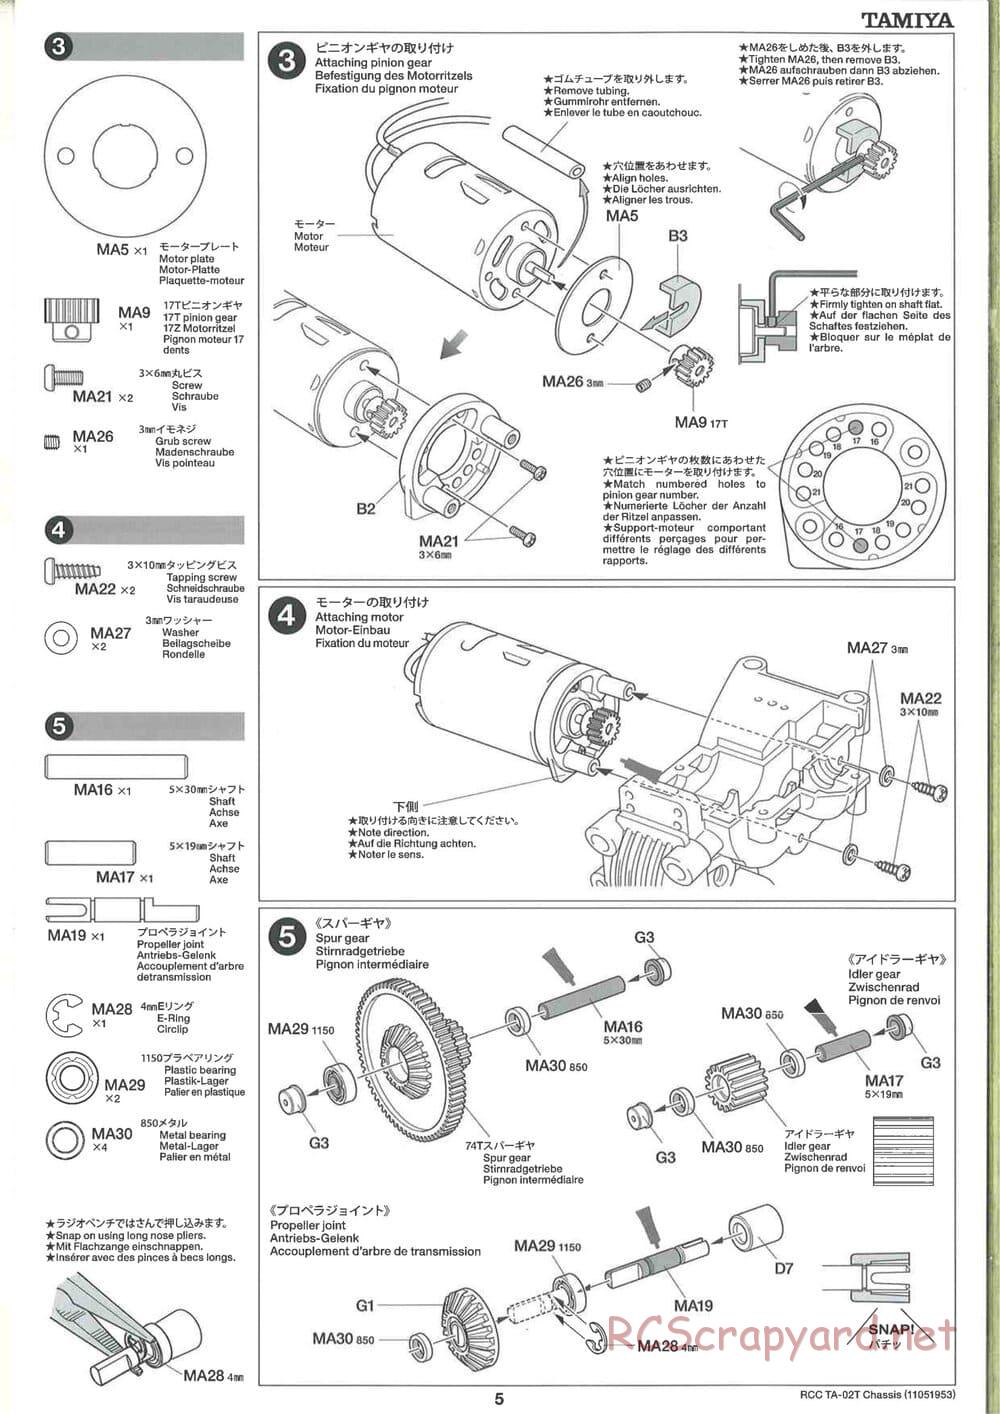 Tamiya - TA-02T Chassis - Manual - Page 5